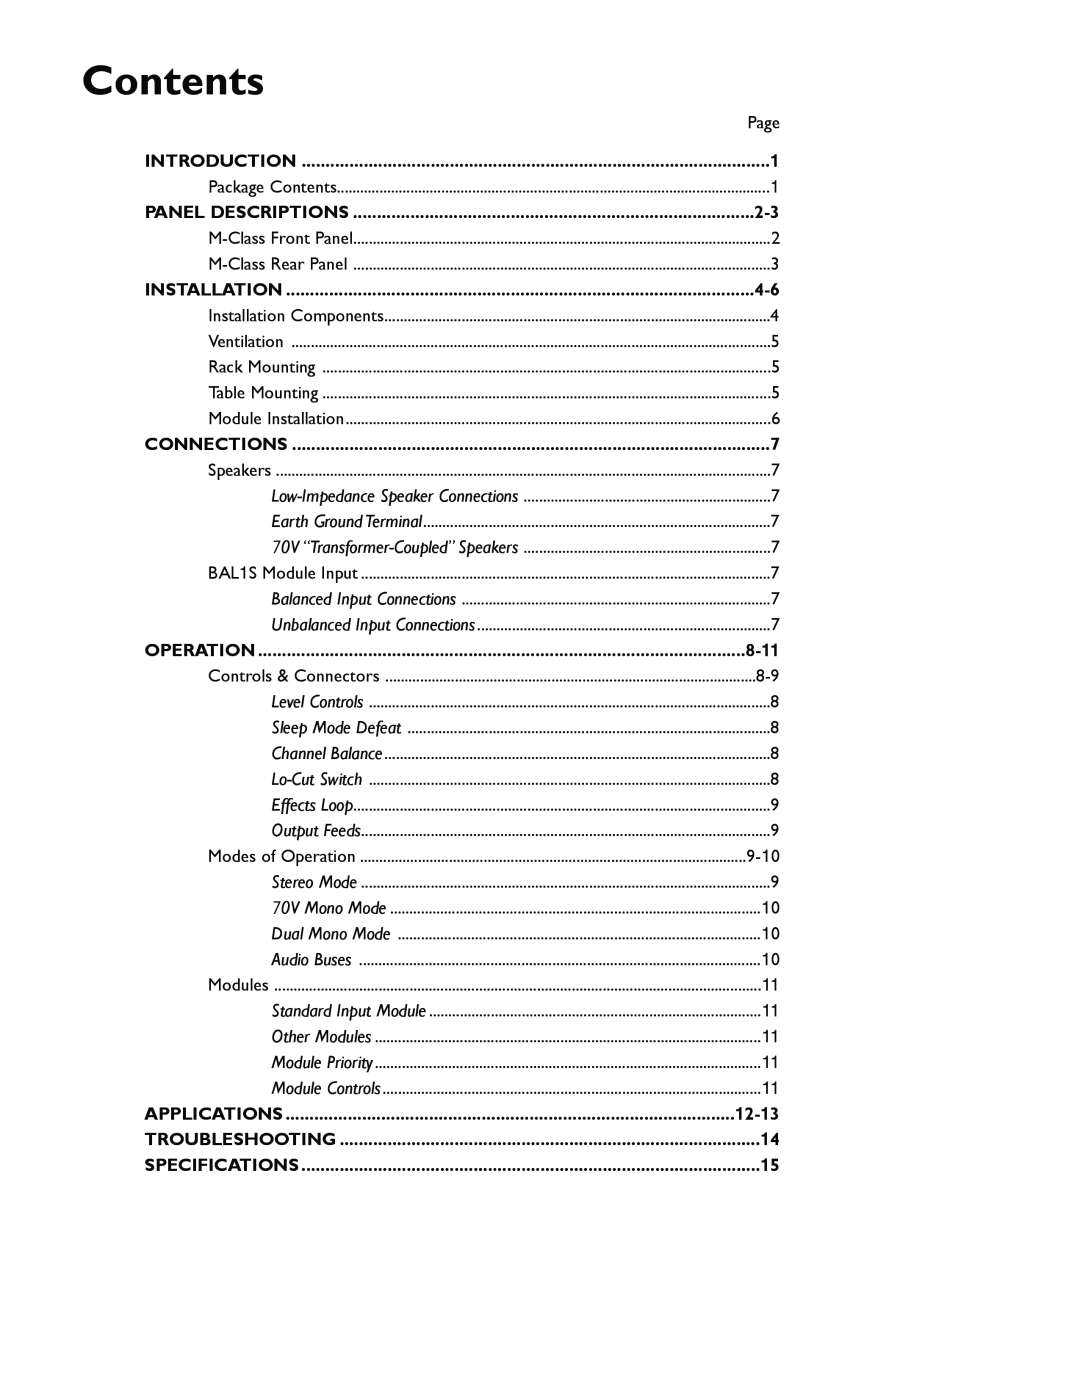 Bogen M300 manual Contents, 8-11, 12-13 